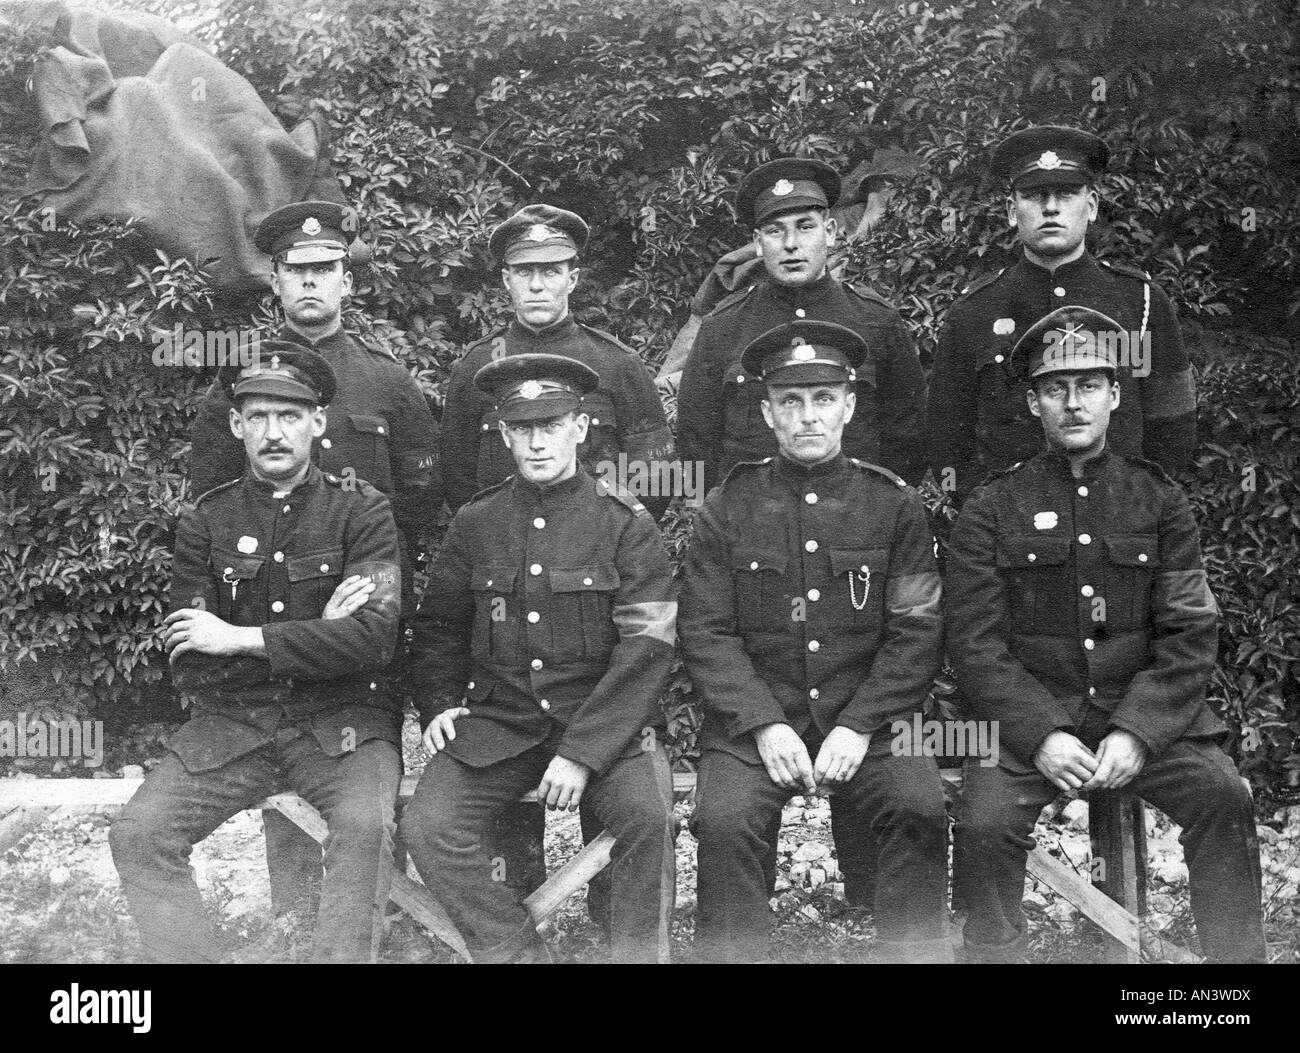 Photo de famille de 1915 du groupe d'hommes du Yorkshire, avant d'être envoyés aux combats face à la grande guerre. Banque D'Images